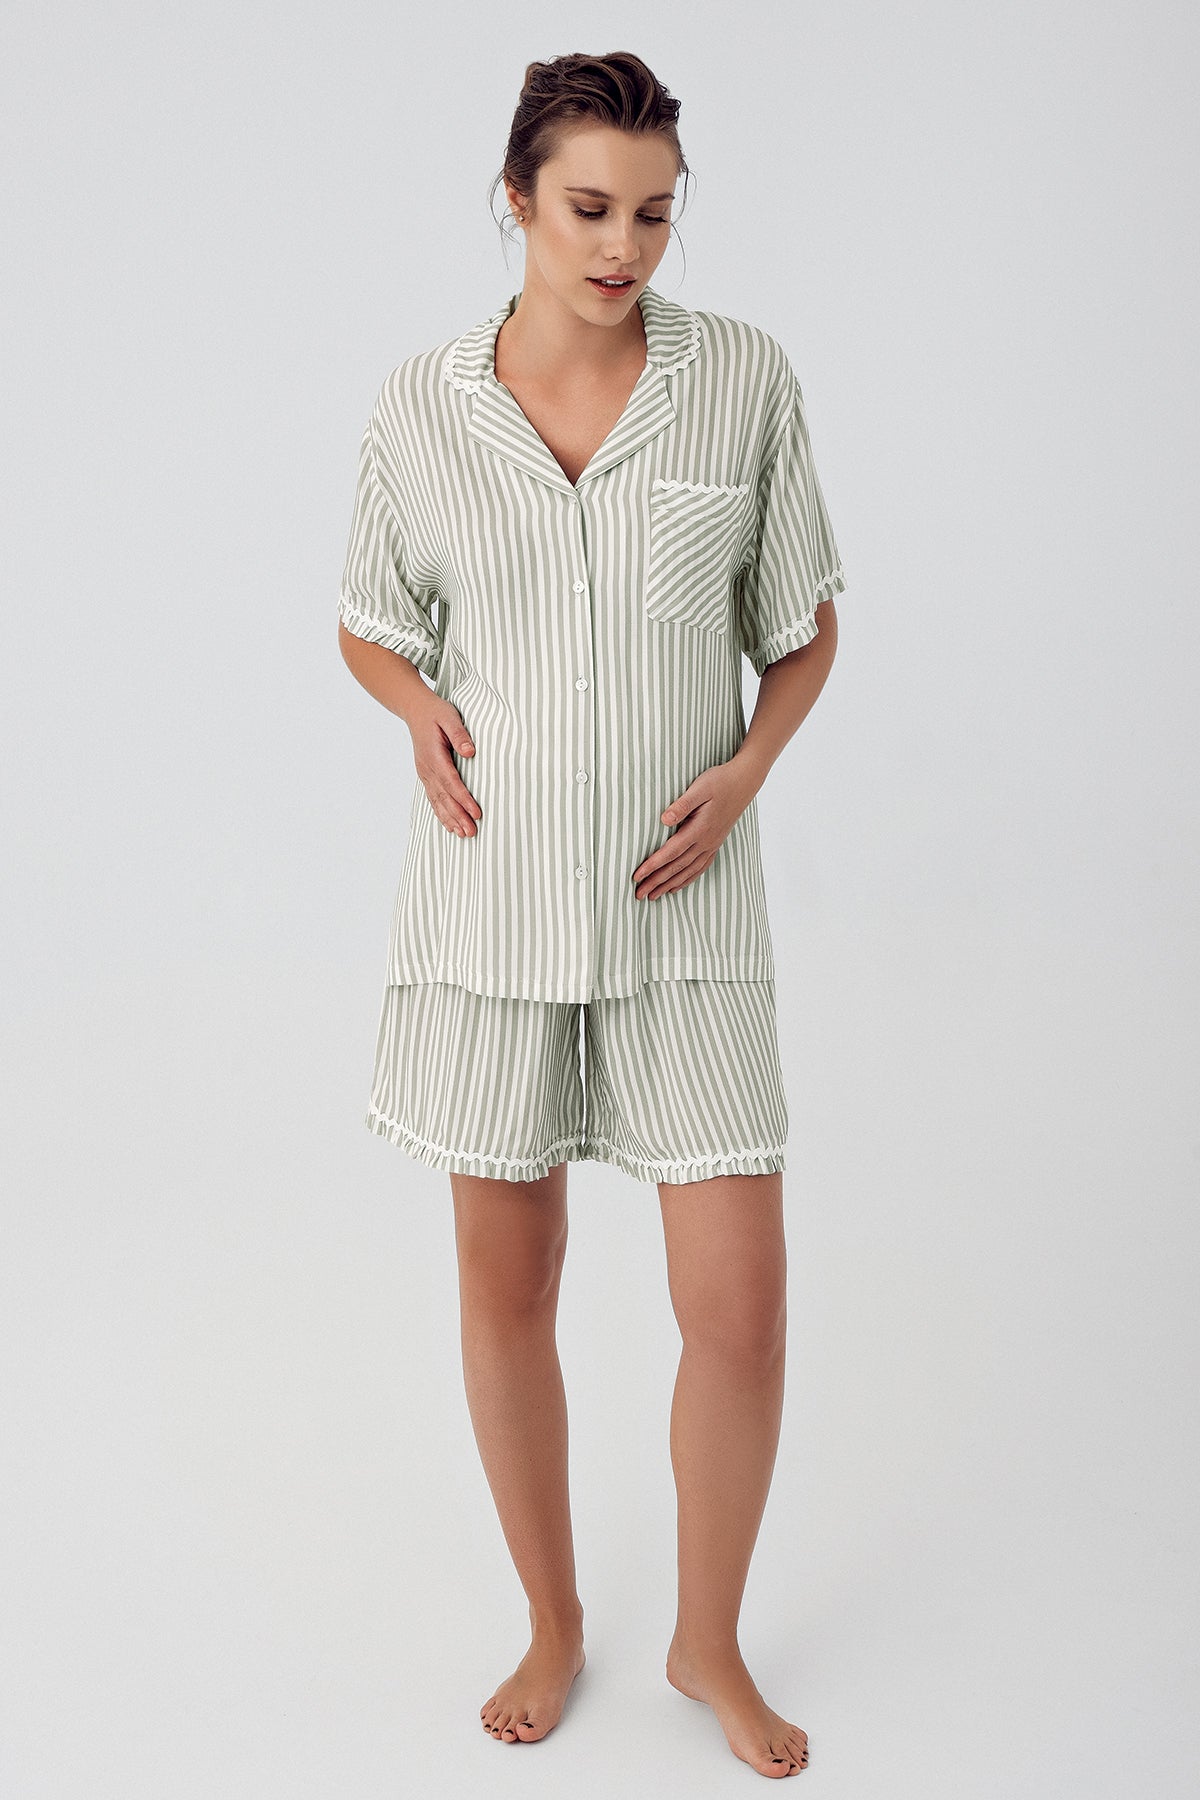 Shopymommy 16204 Striped Maternity & Nursing Shorts Set Green